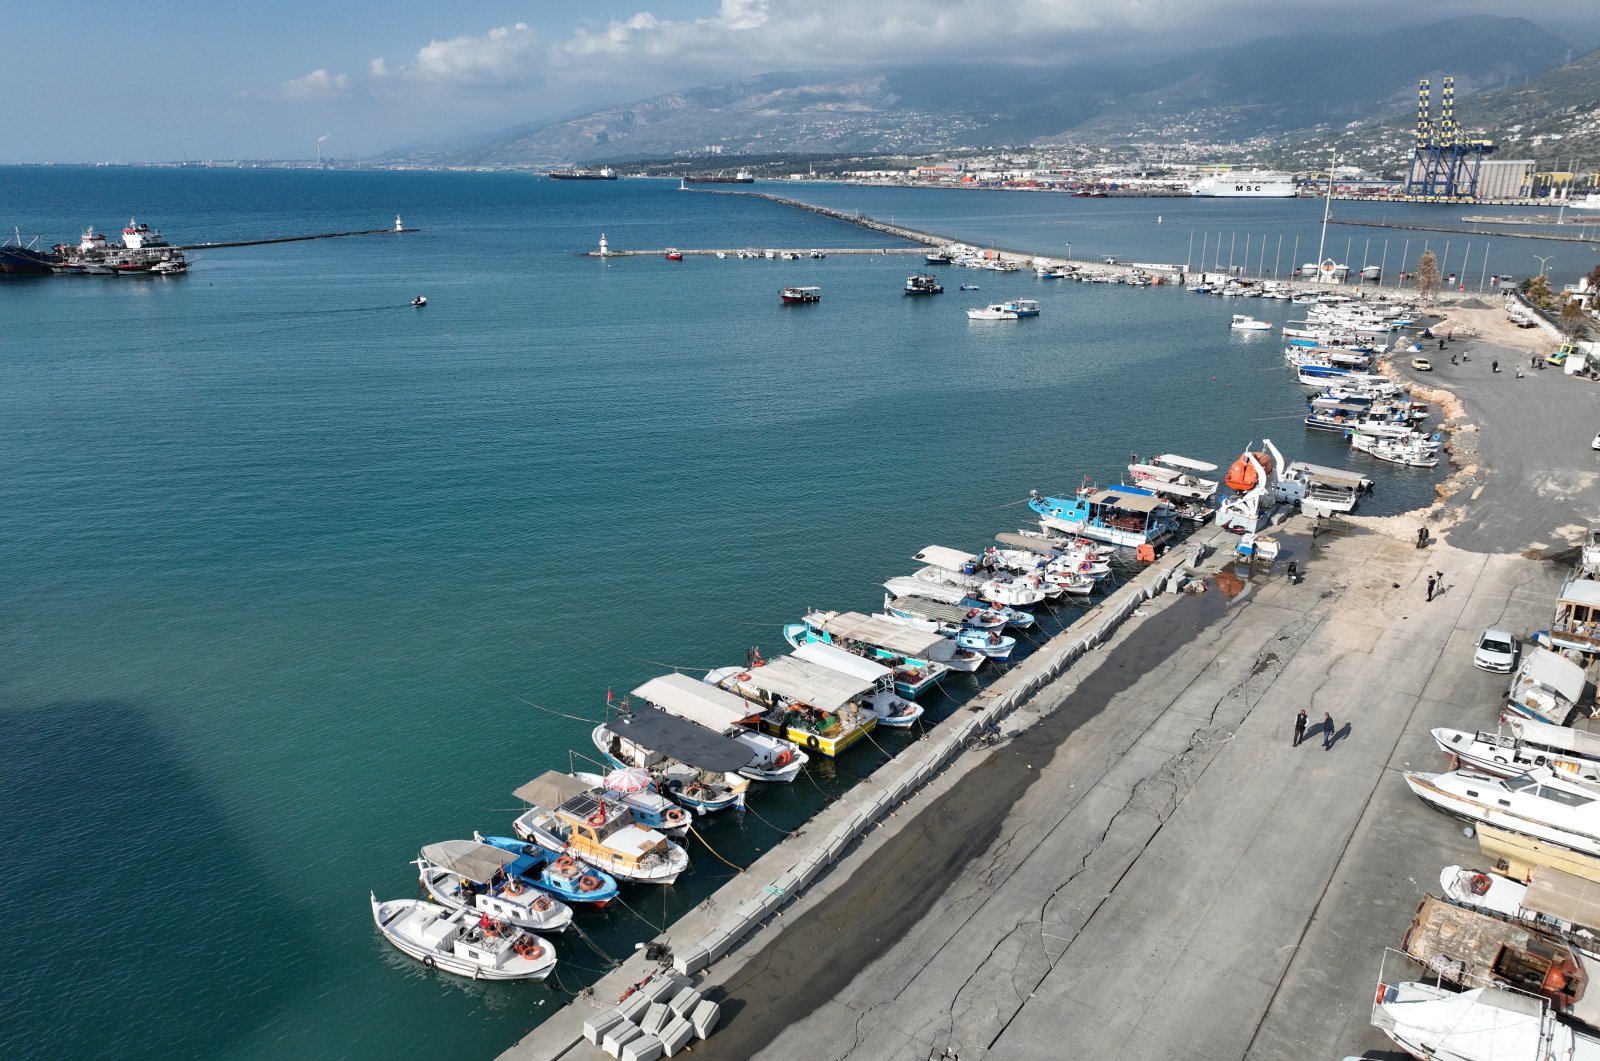 Türkiye mengumumkan dukungan keuangan untuk nelayan yang terkena dampak gempa